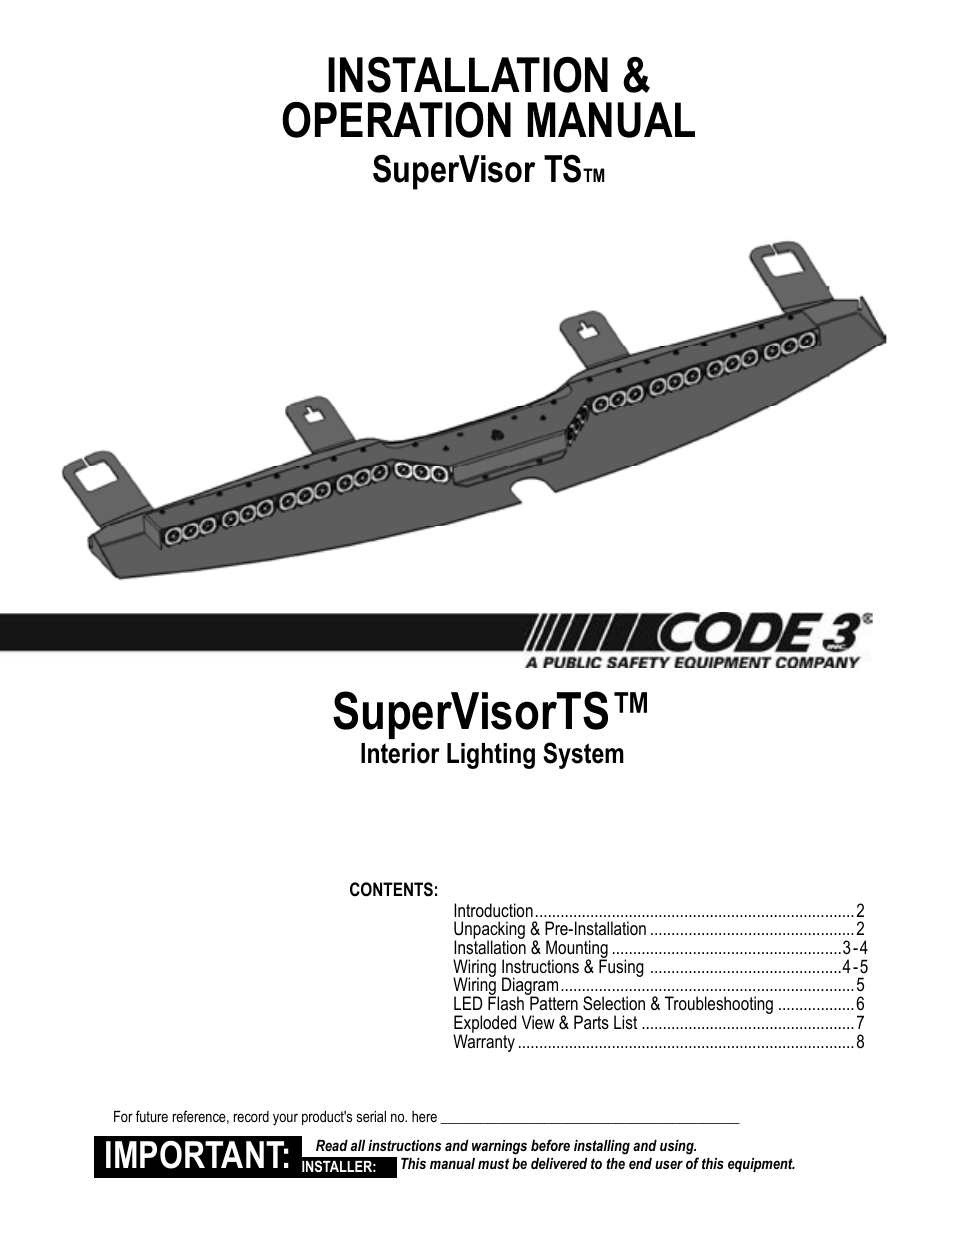 Details about   NEW Code 3 PSE Supervisor Flex Torus Interior Dual Color LED Light Module R/W 